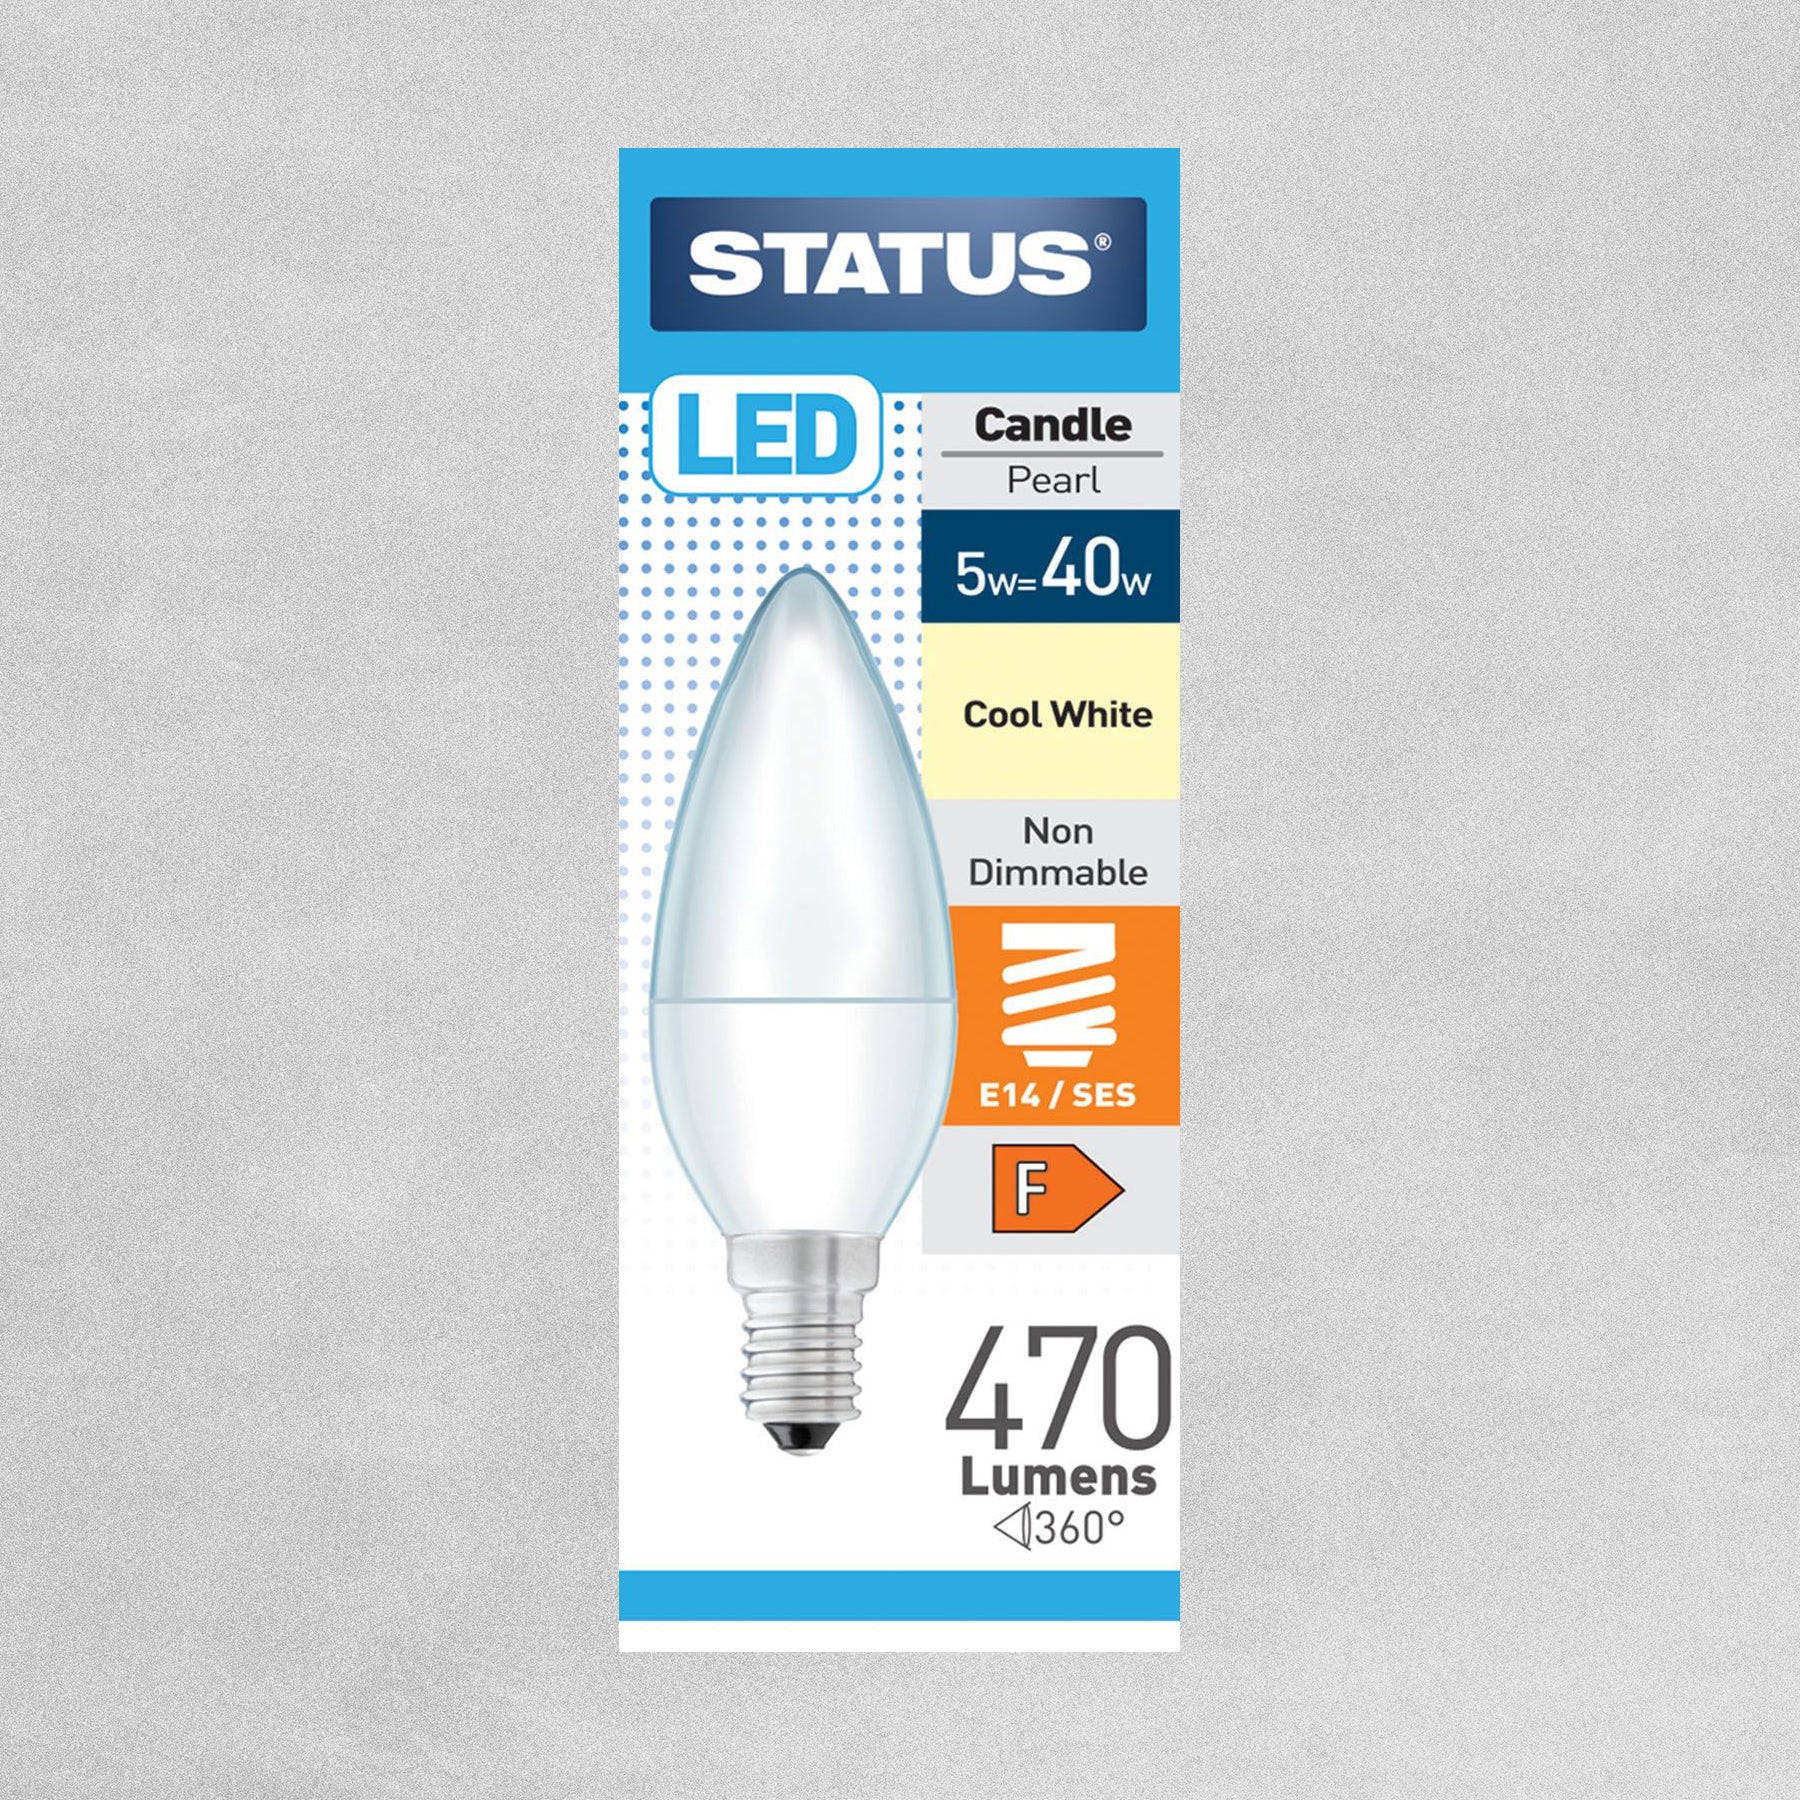 Status LED Candle Pearl Bulb E14/SES 5w=40w - Cool White